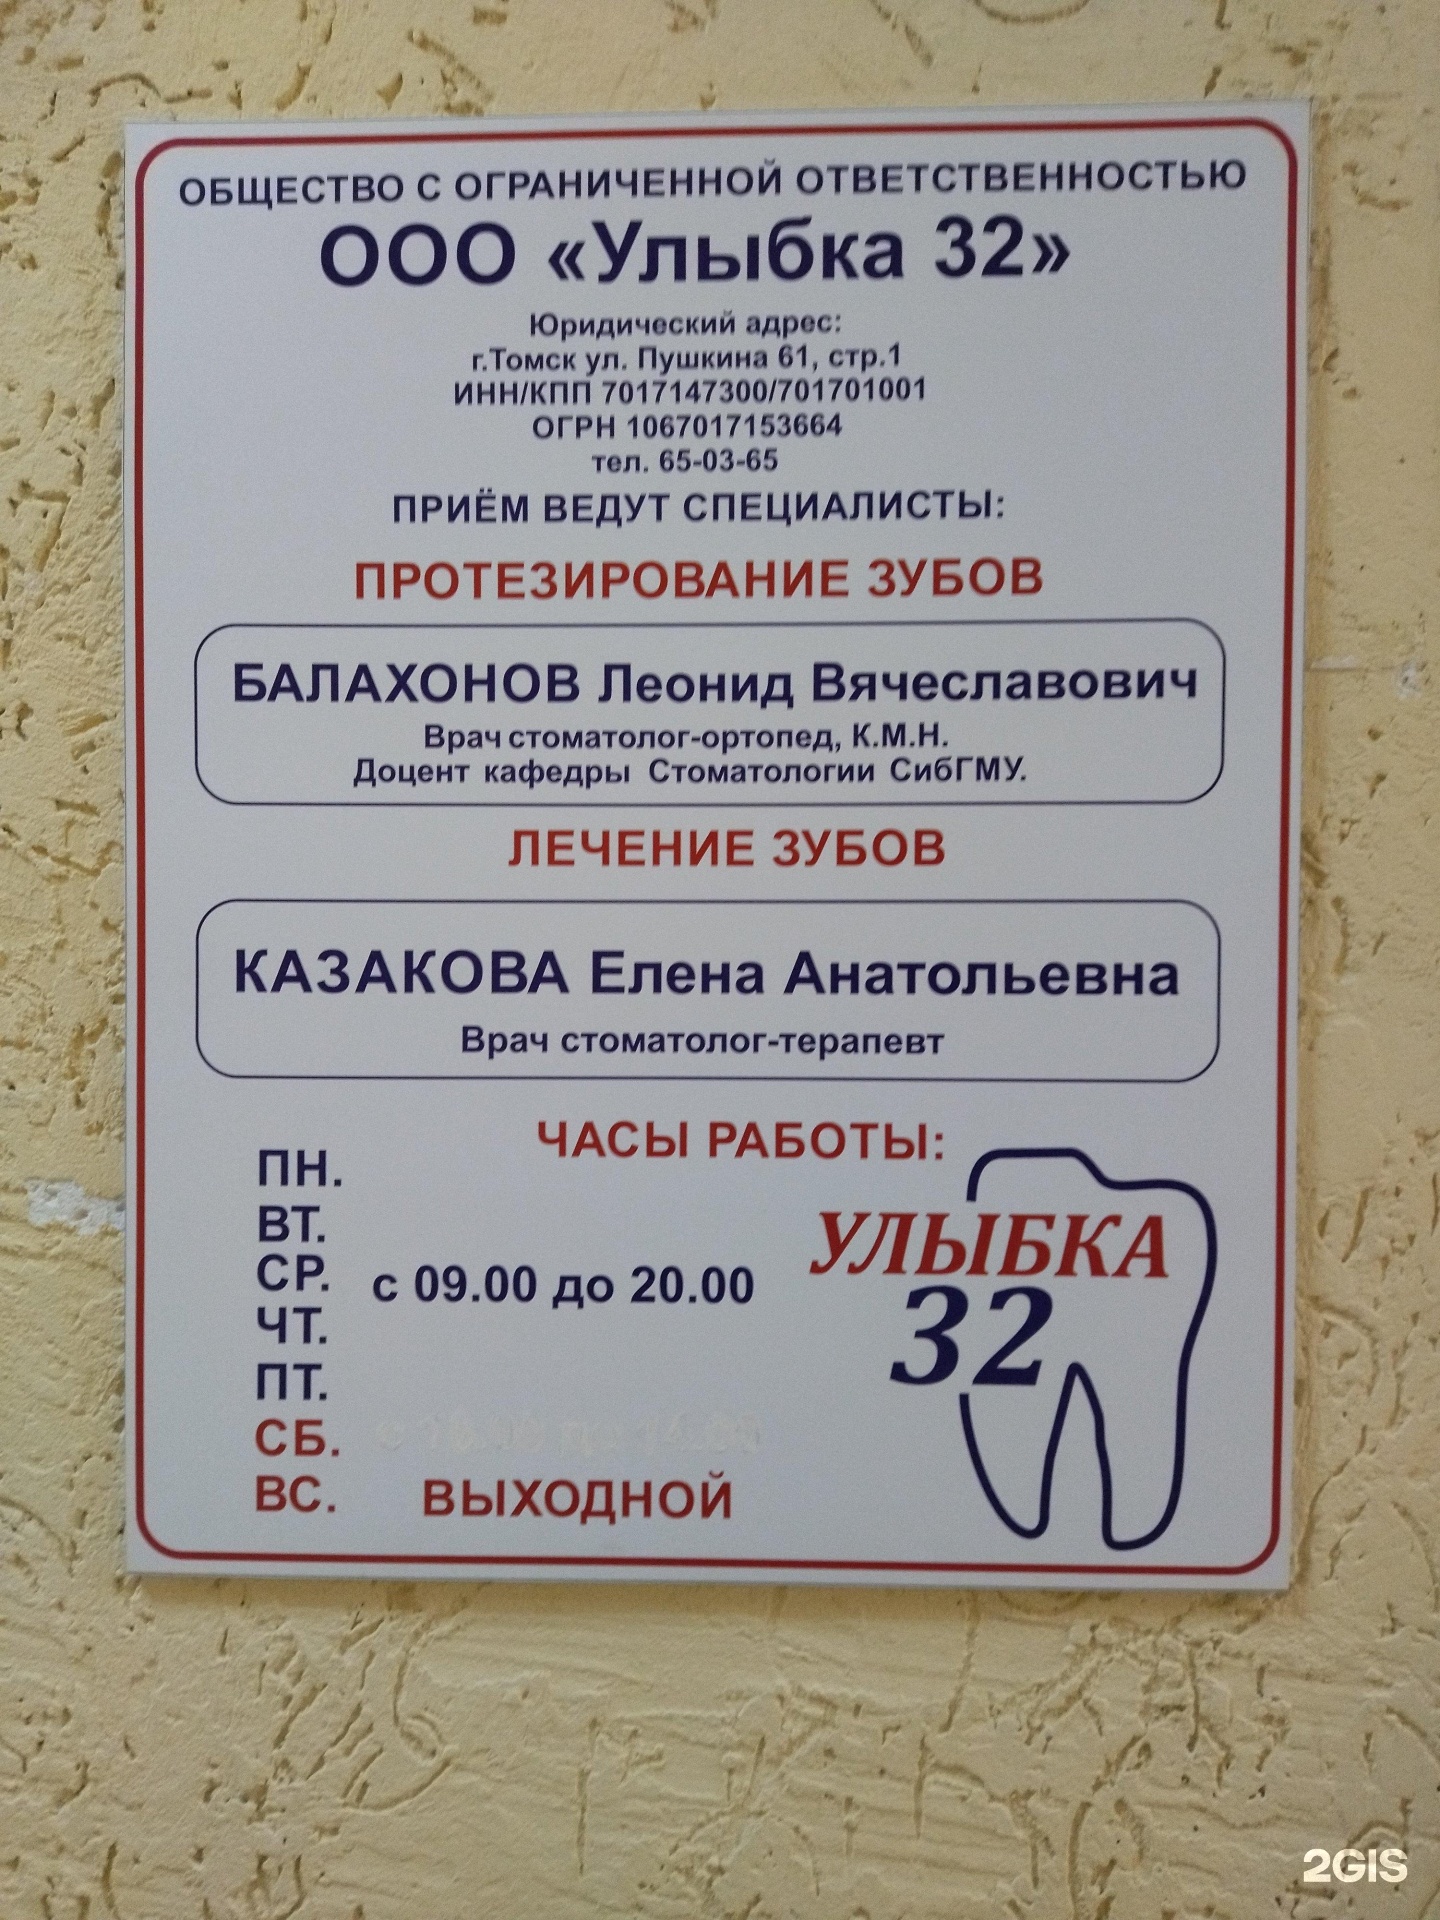 Томск улыбка 32 стоматология пушкина центр дентальной имплантологии в томске